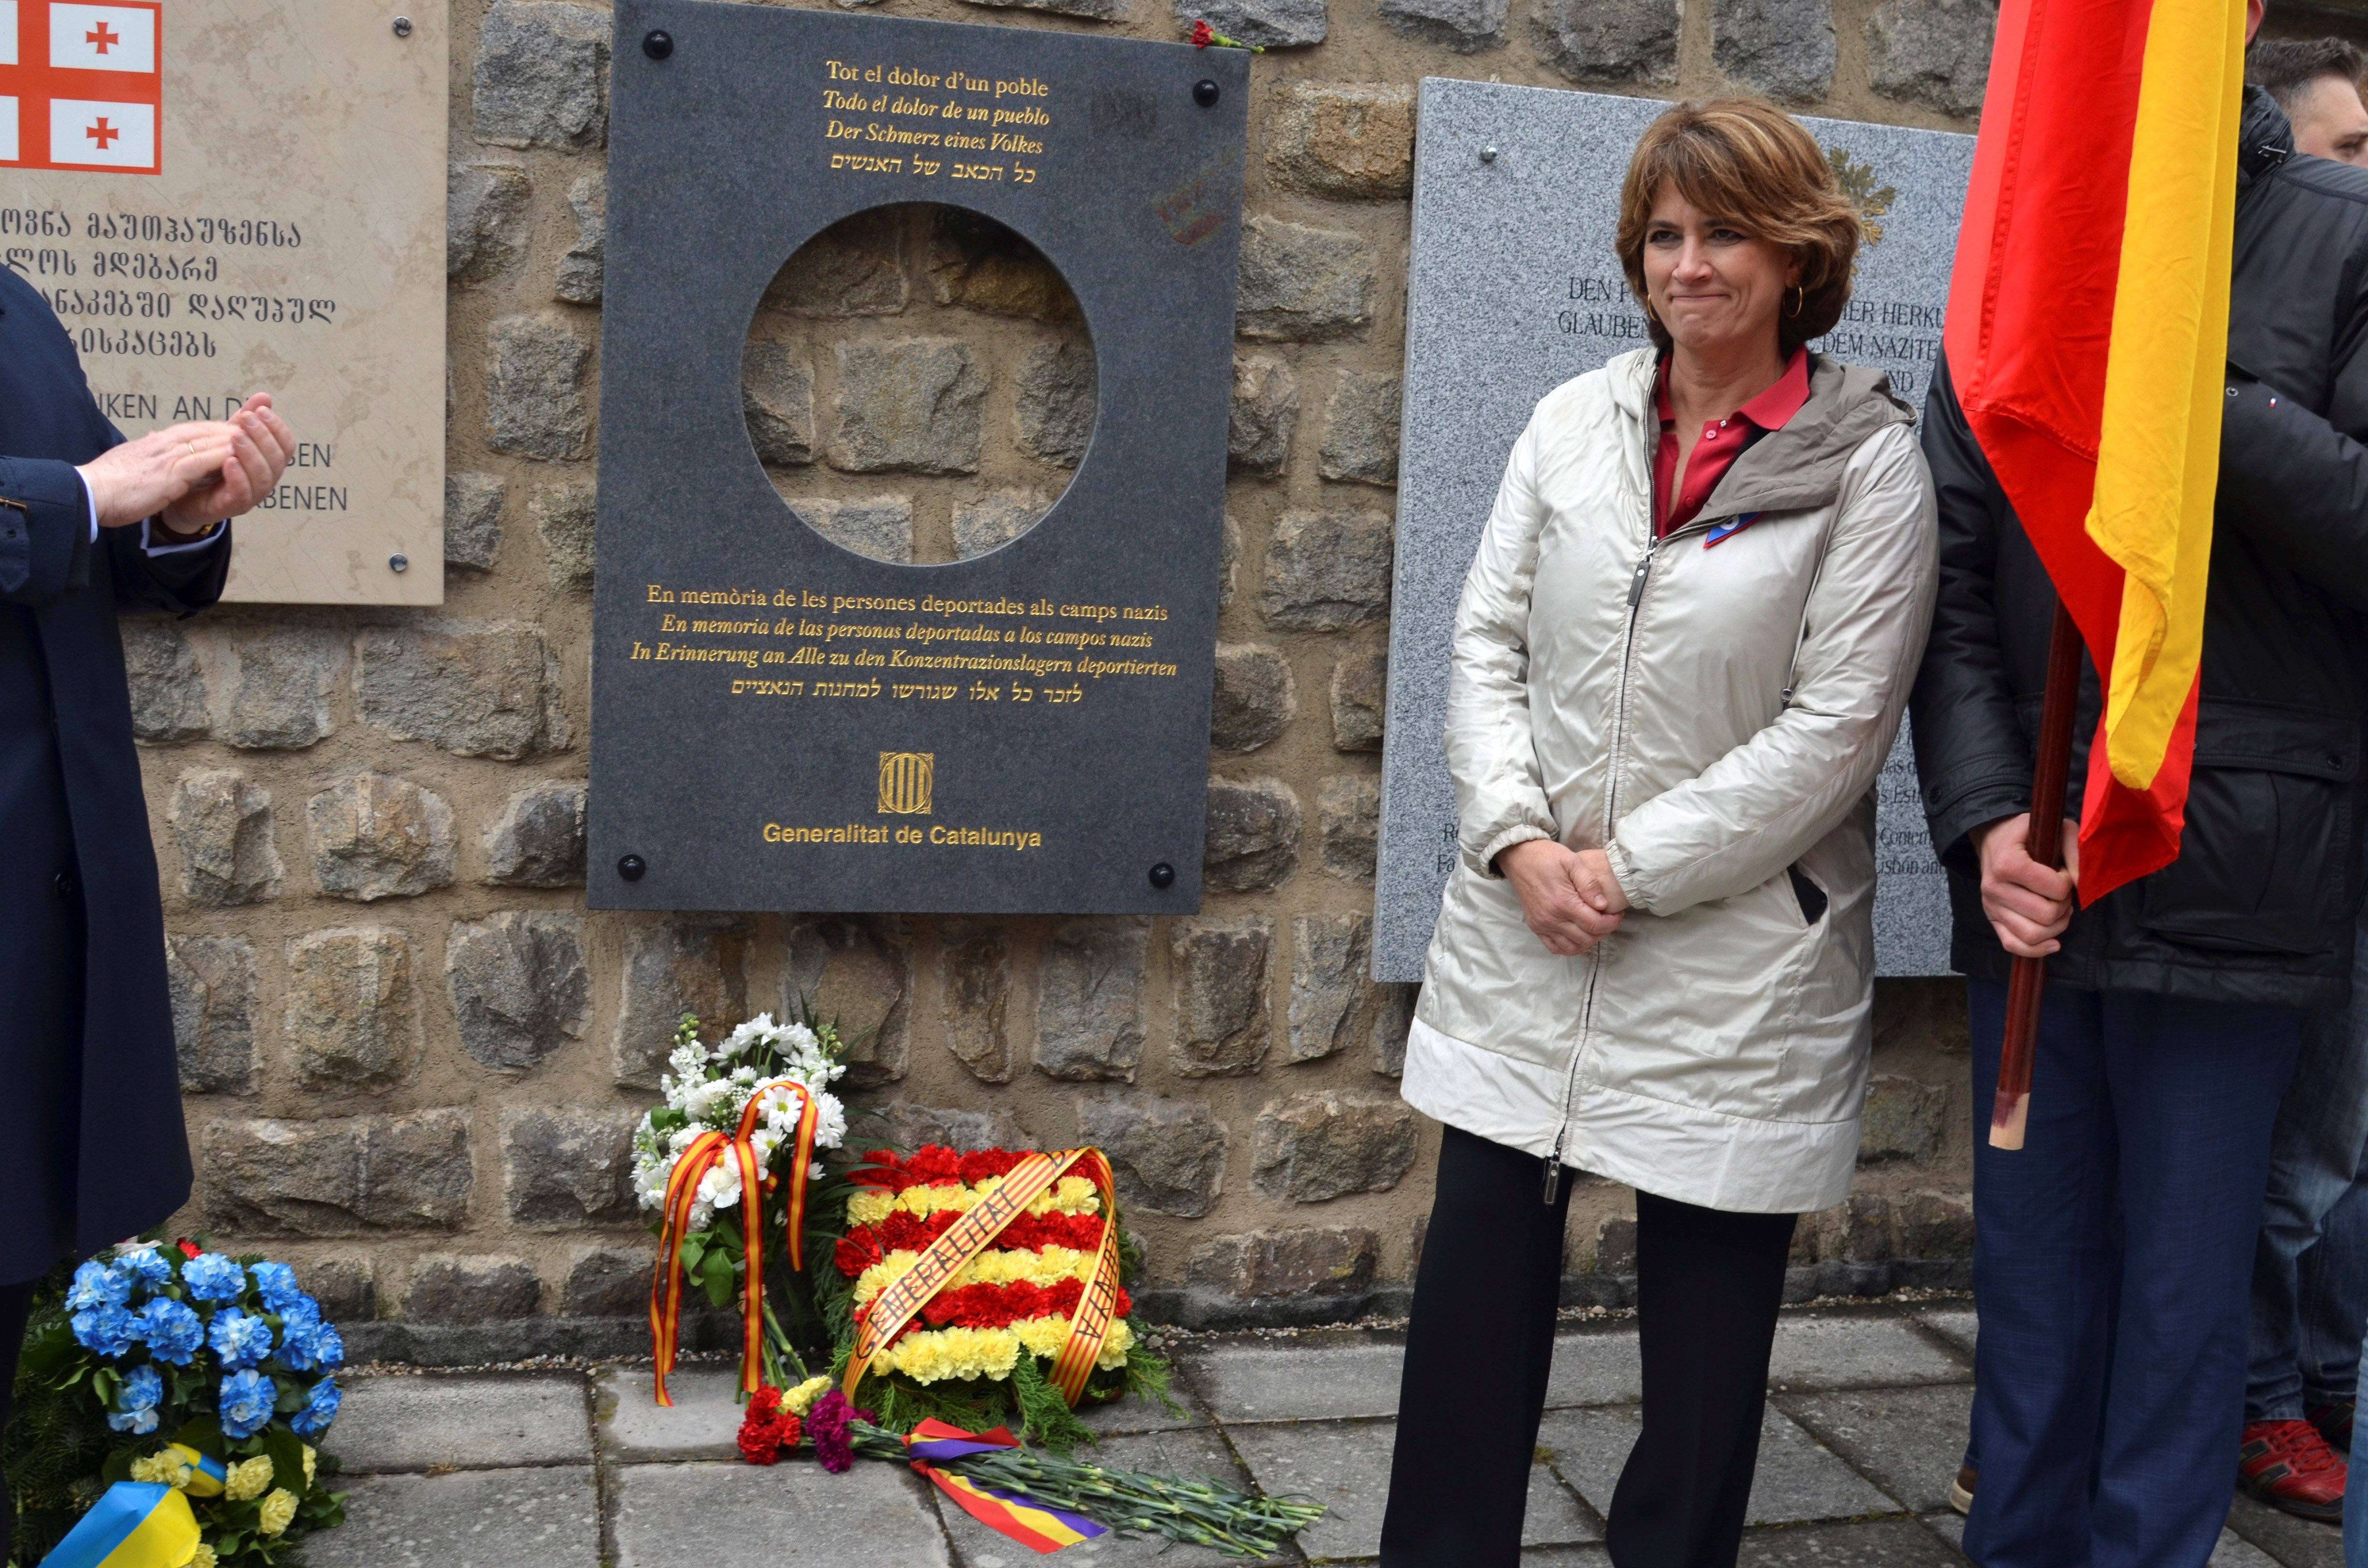 La ministra Delgado planta un homenaje a Mauthausen al oír hablar de presos políticos